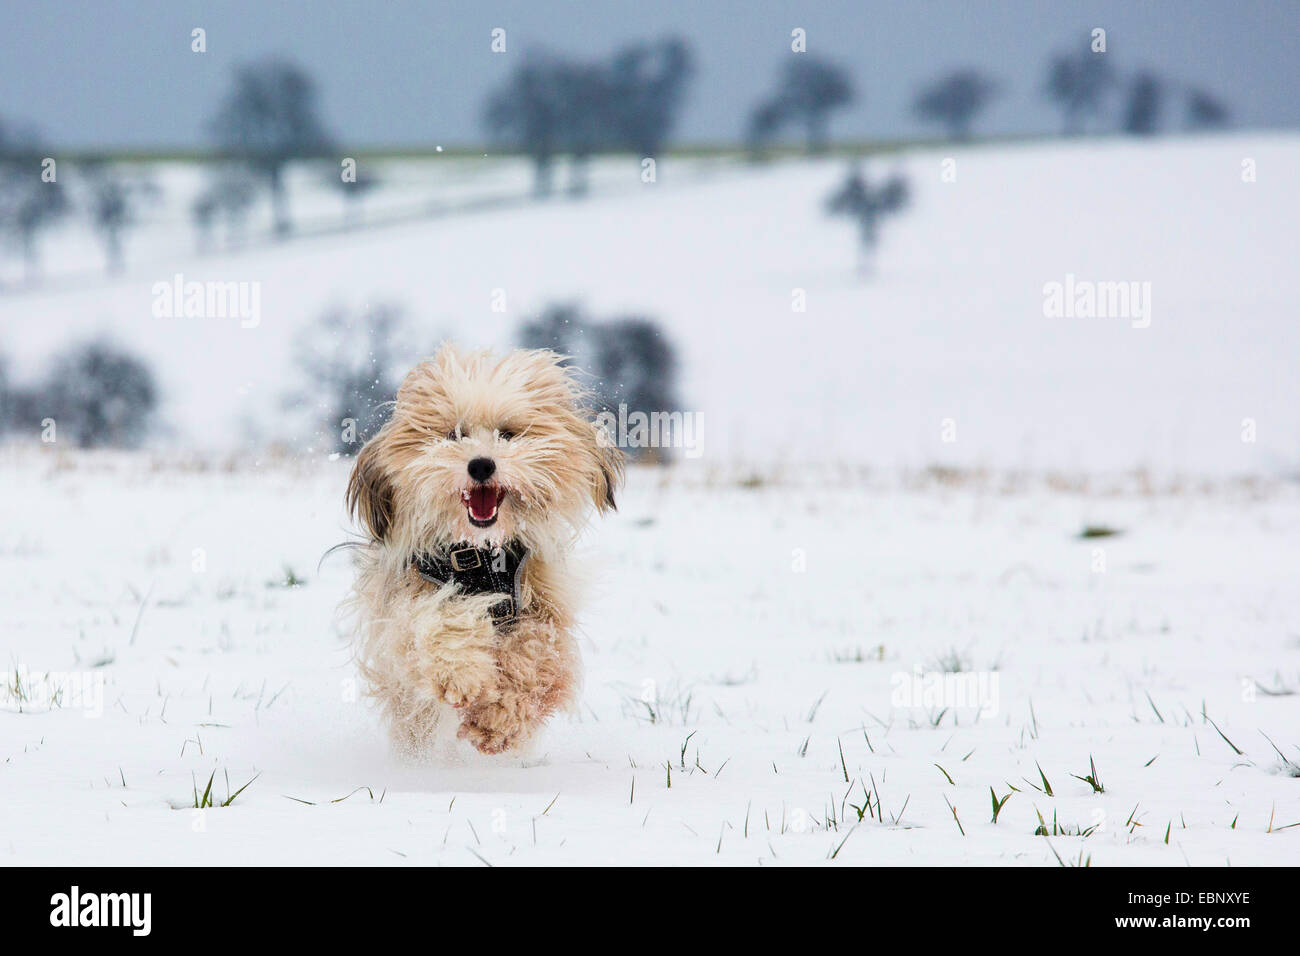 Terrier tibétain Tsang, Apso, Dokhi Apso (Canis lupus f. familiaris), un an, et sable brillant homme de race blanche s'exécutant sur un champ neigeux vers la caméra, Allemagne Banque D'Images